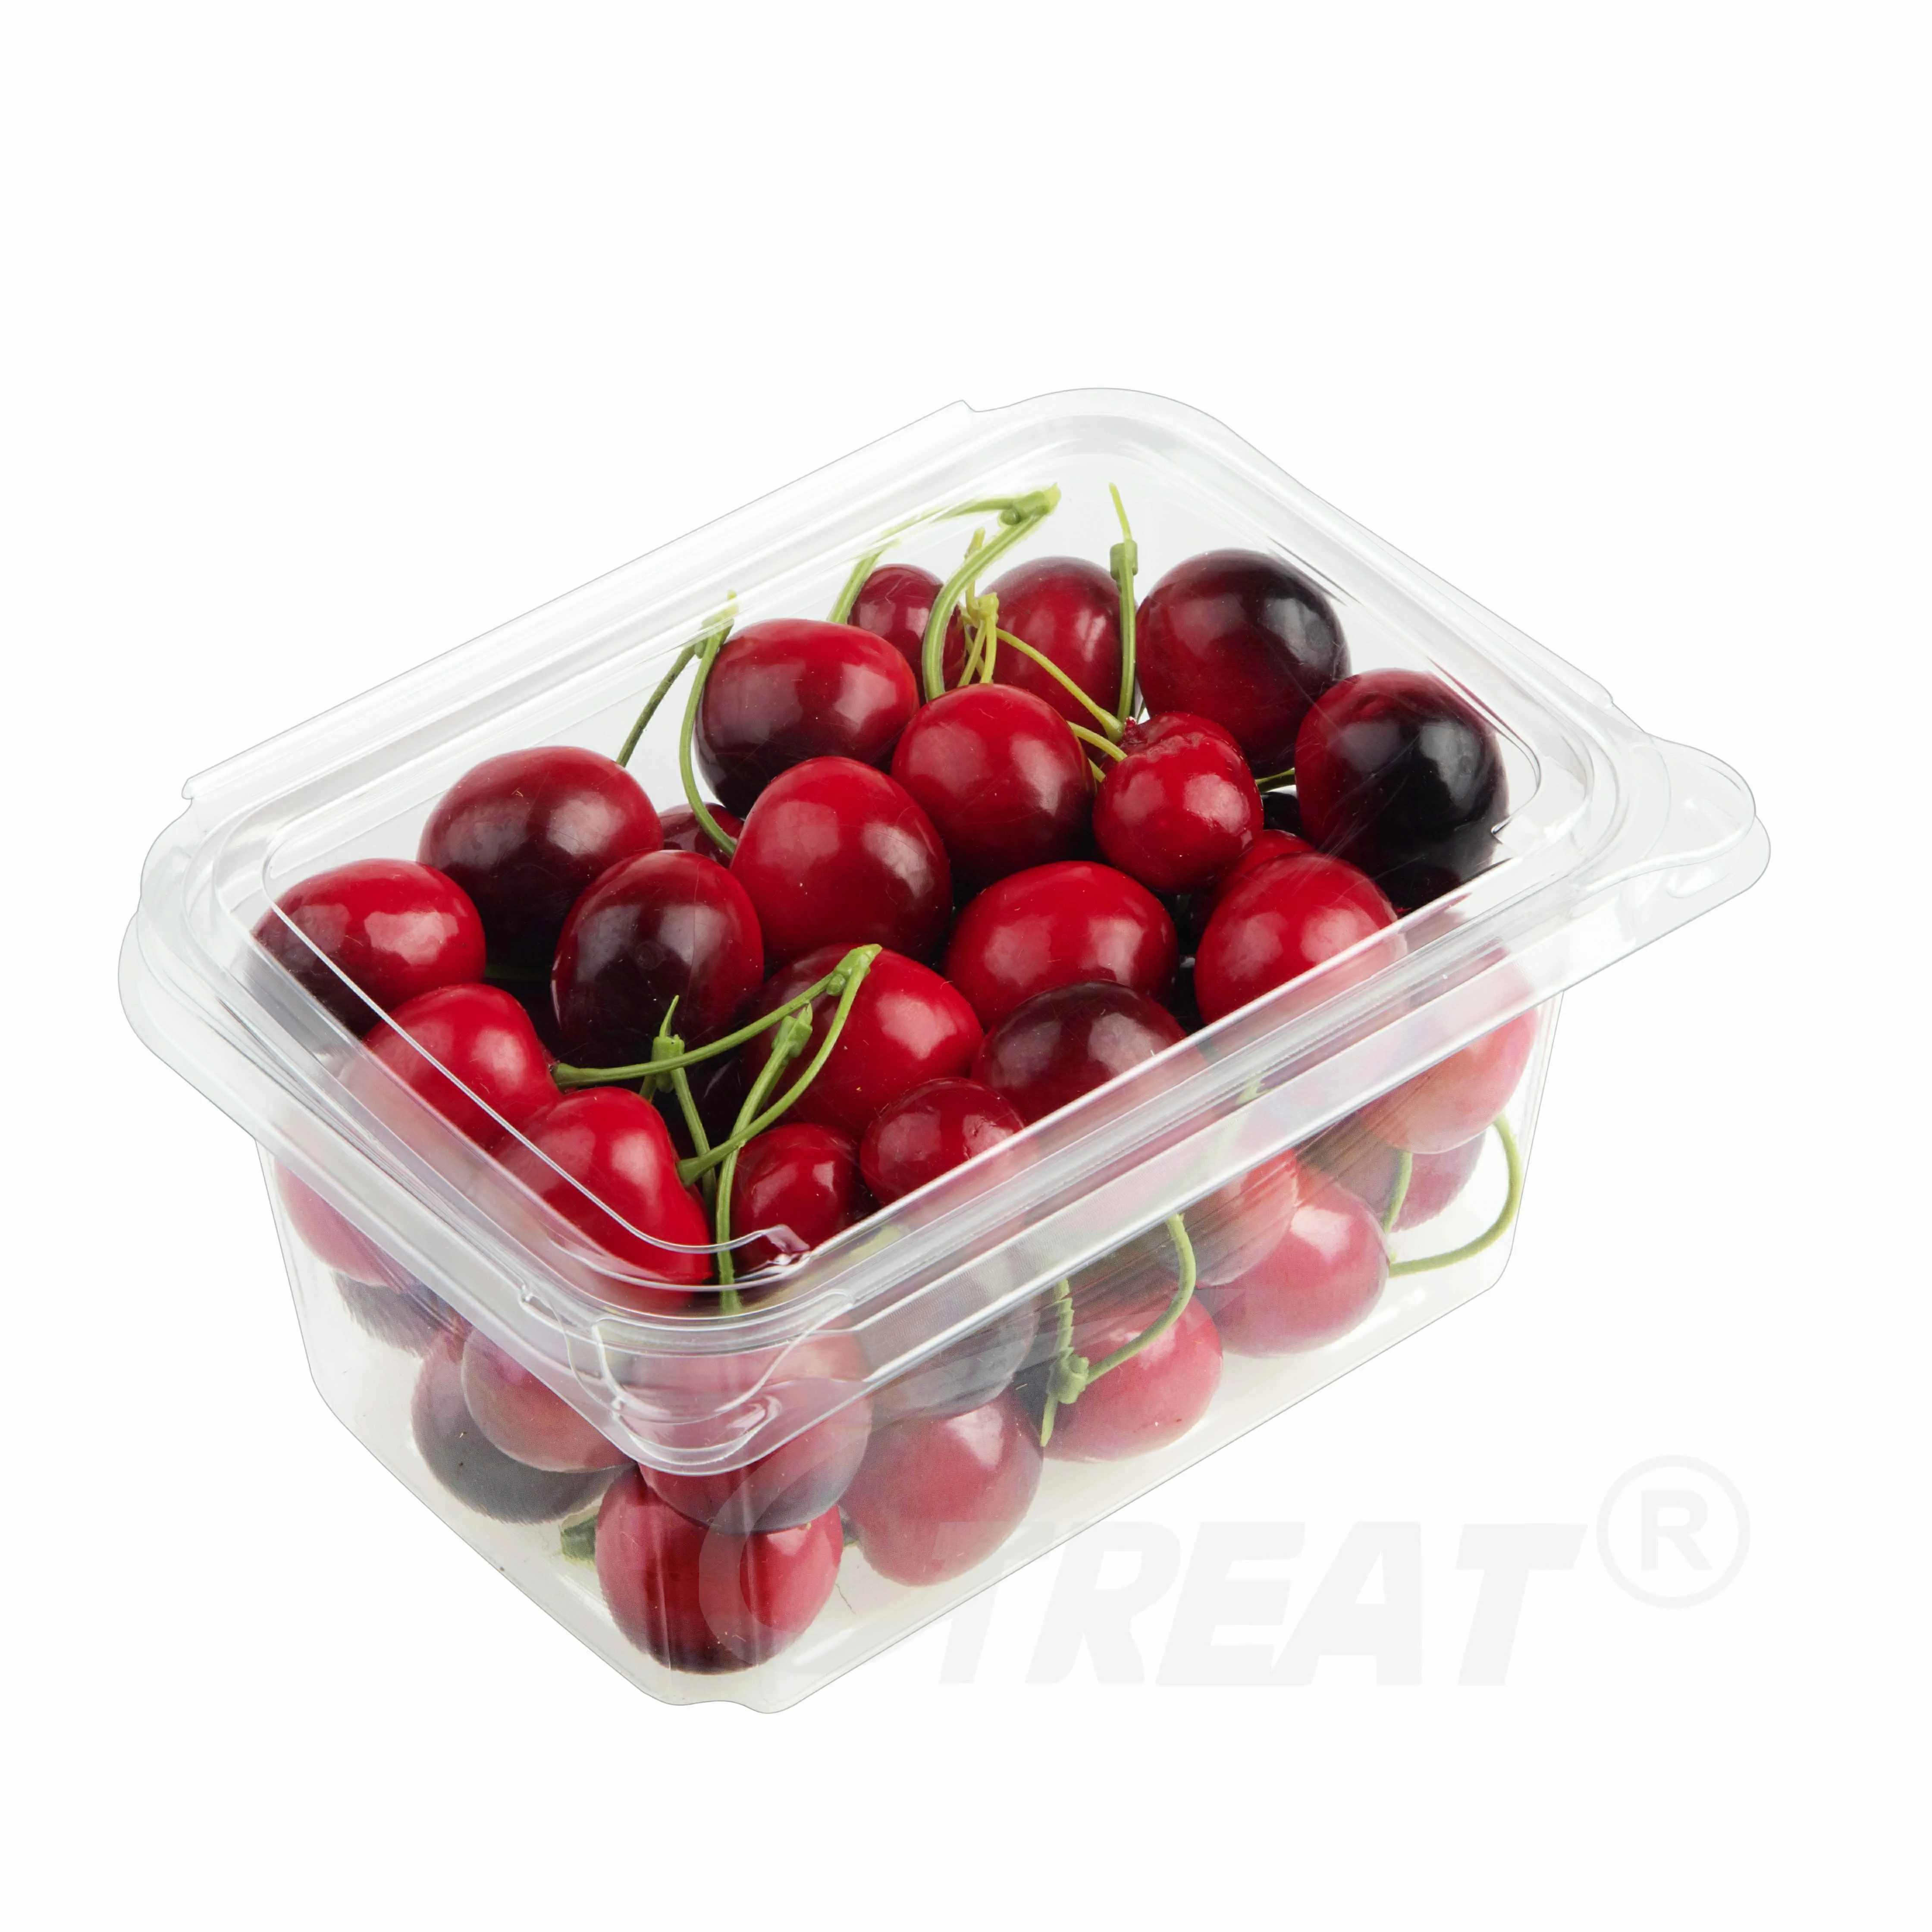 Großhandel einweg-Lebensmittelbehälter aus Kunststoff für frisches Obst und Gemüse durchsichtige Erdbeerbox